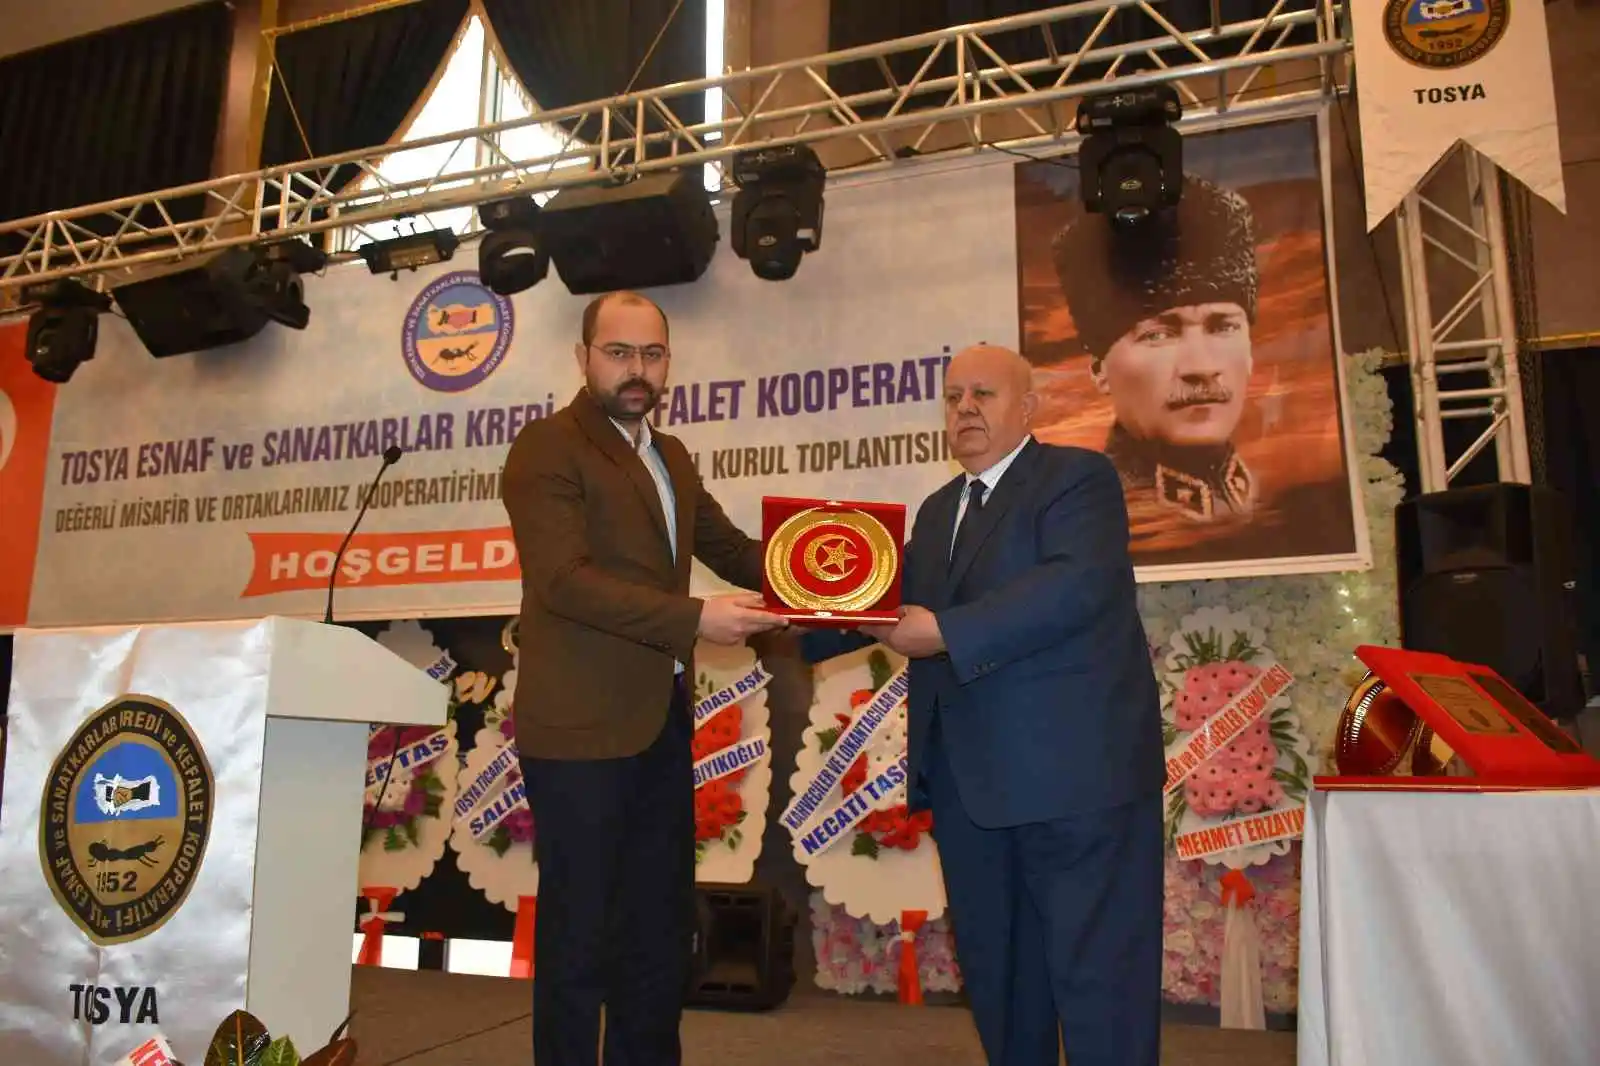 Tosya Esnaf ve Sanatkarlar Kooperatifi Başkanı Mustafa Pazarcı güven tazeledi
